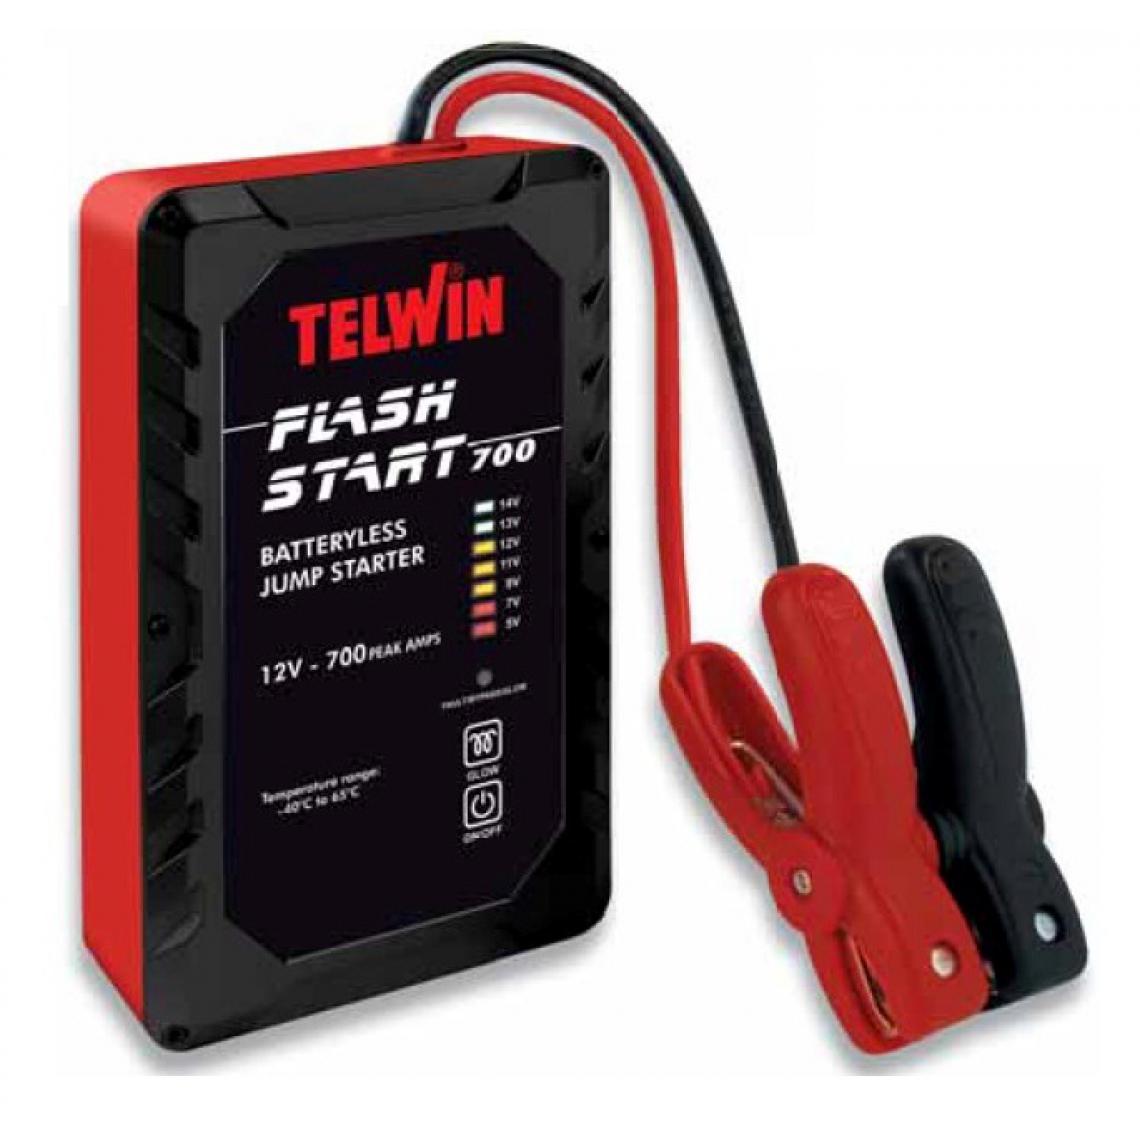 Telwin - Telwin - Démarreur sans batterie 12V 700A - FLASH START 700 - Consommables pour outillage motorisé